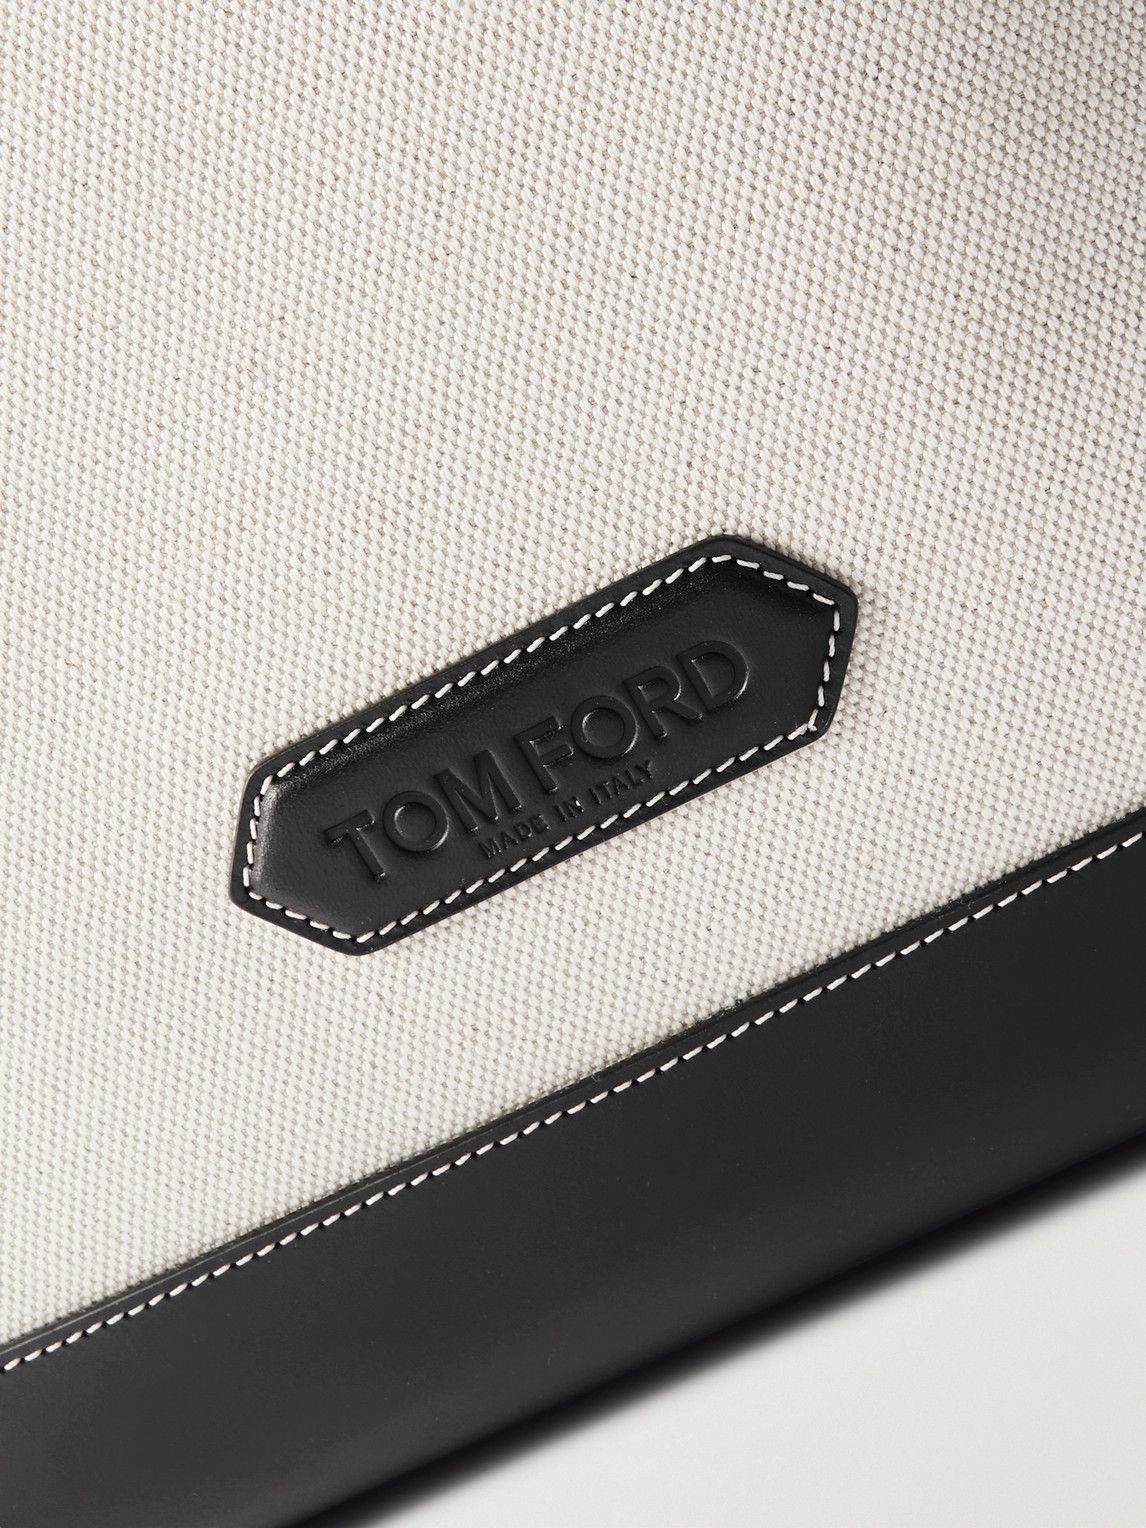 TOM FORD - Logo-Appliquéd Leather-Trimmed Canvas Tote Bag TOM FORD